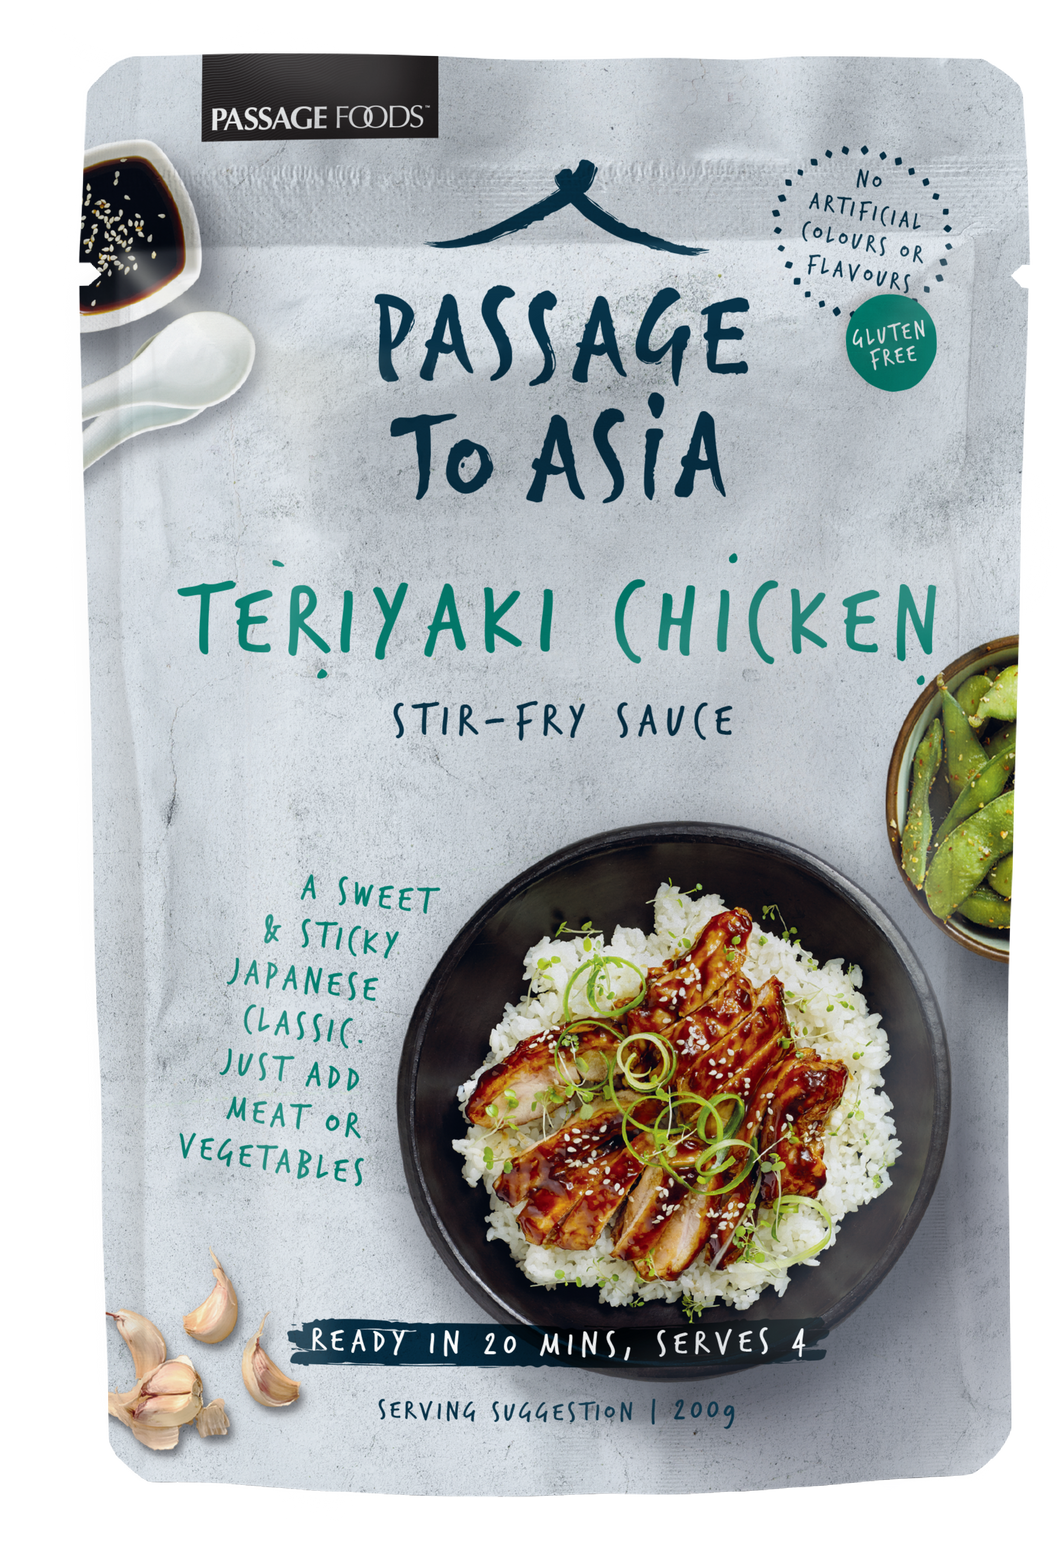 Passage to Asia - Teriyaki Chicken Stir-Fry Sauce